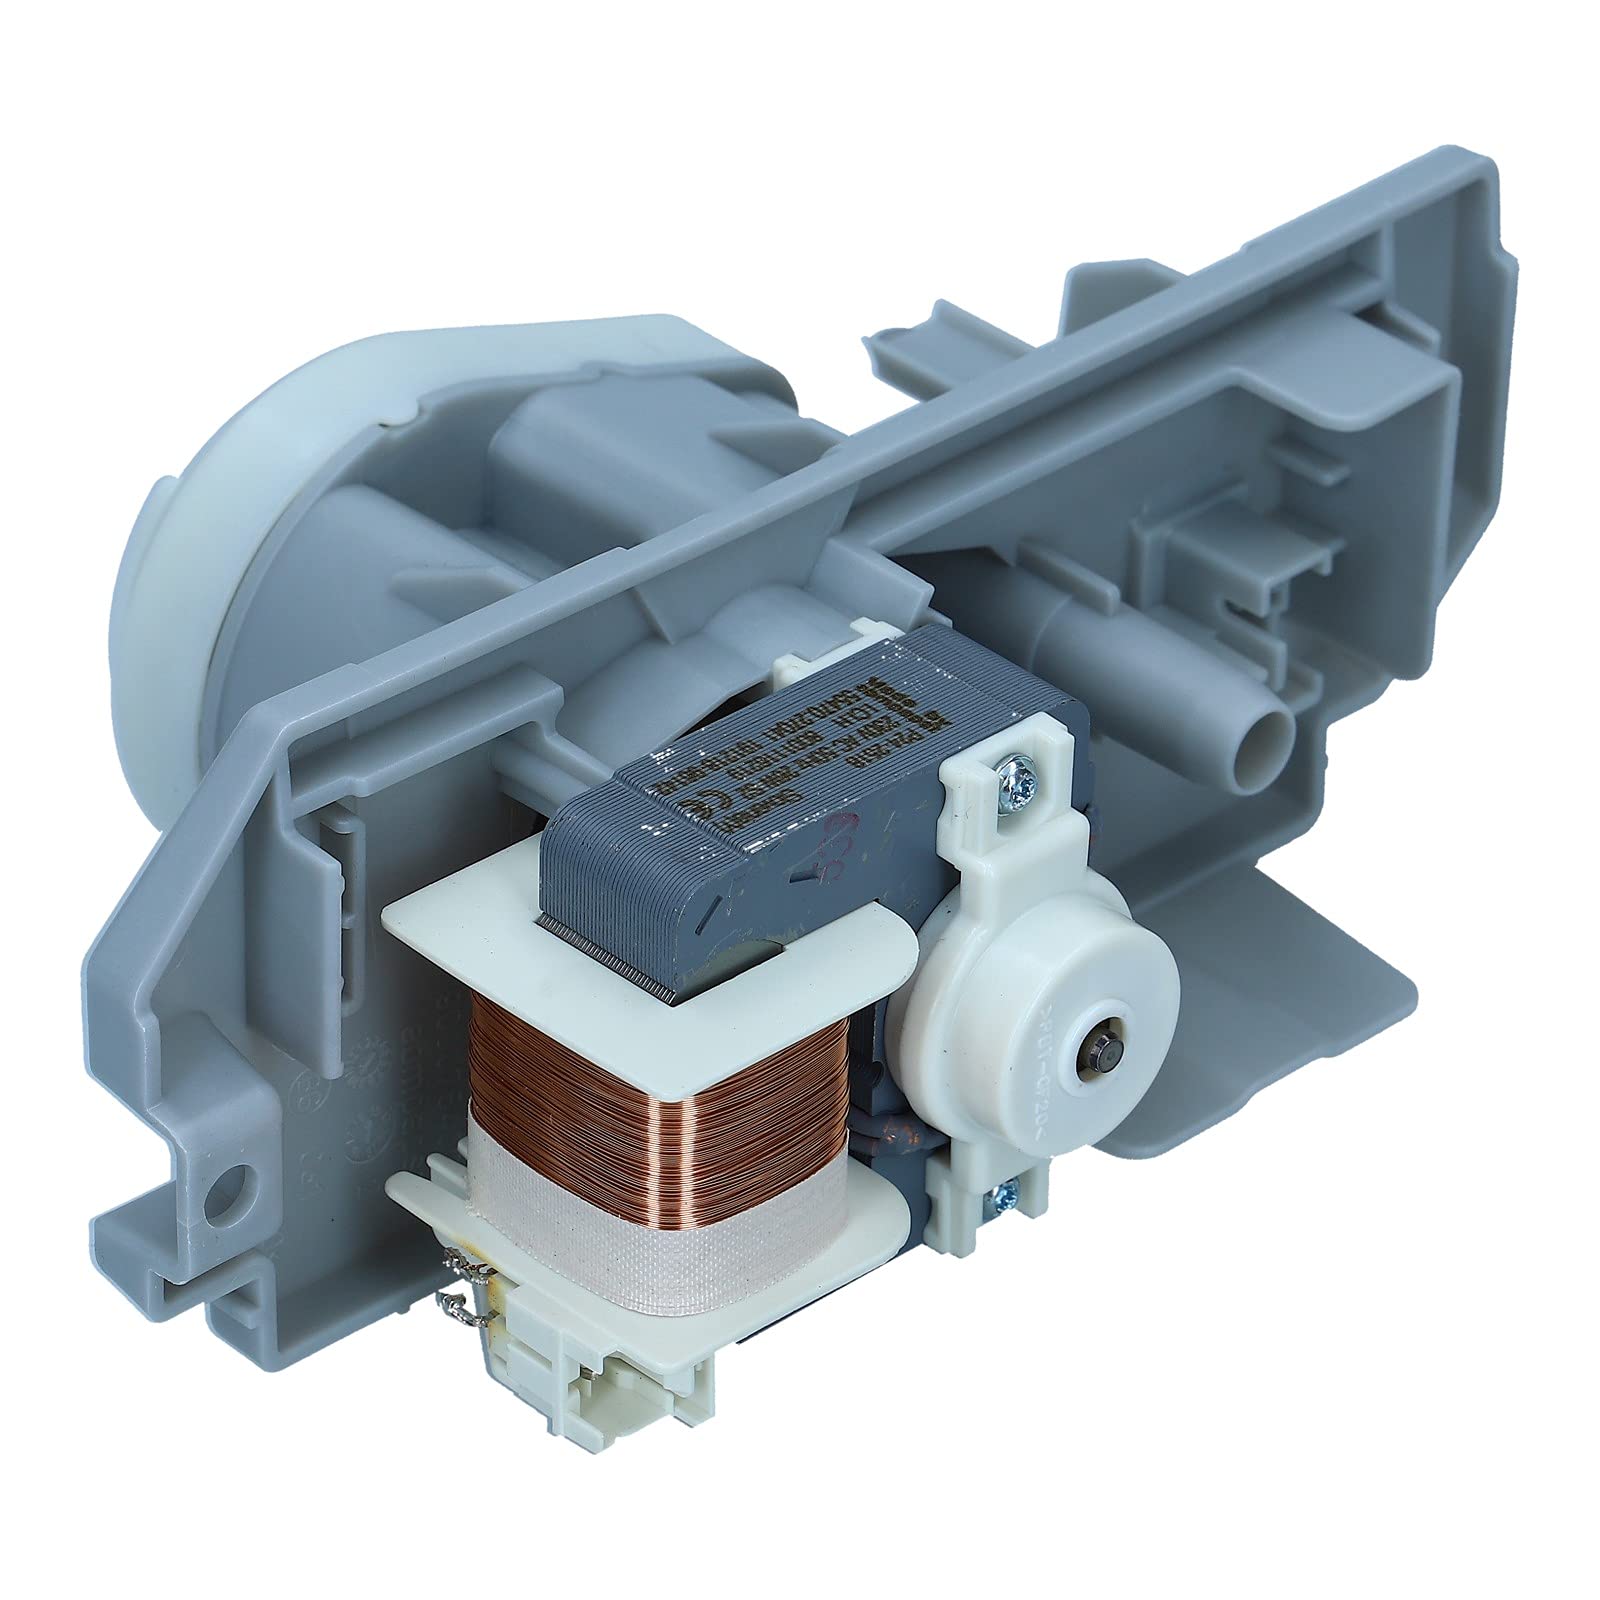 Kondenswasserpumpe Wasserpumpe Pumpe 26W 230V 50Hz kompatibel mit Bosch Siemens 00145388 00145319 für Trockner Wäschetrockner